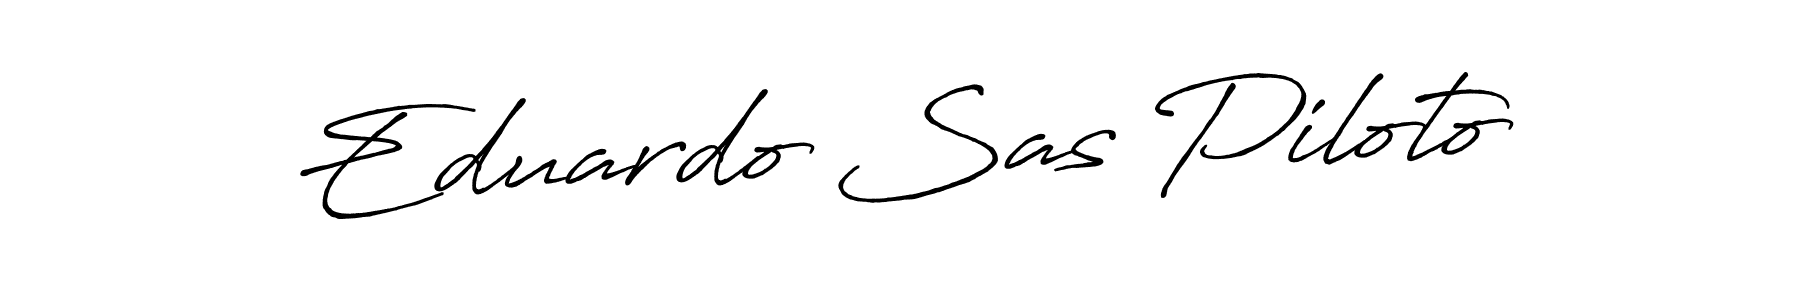 How to Draw Eduardo Sas Piloto signature style? Antro_Vectra_Bolder is a latest design signature styles for name Eduardo Sas Piloto. Eduardo Sas Piloto signature style 7 images and pictures png